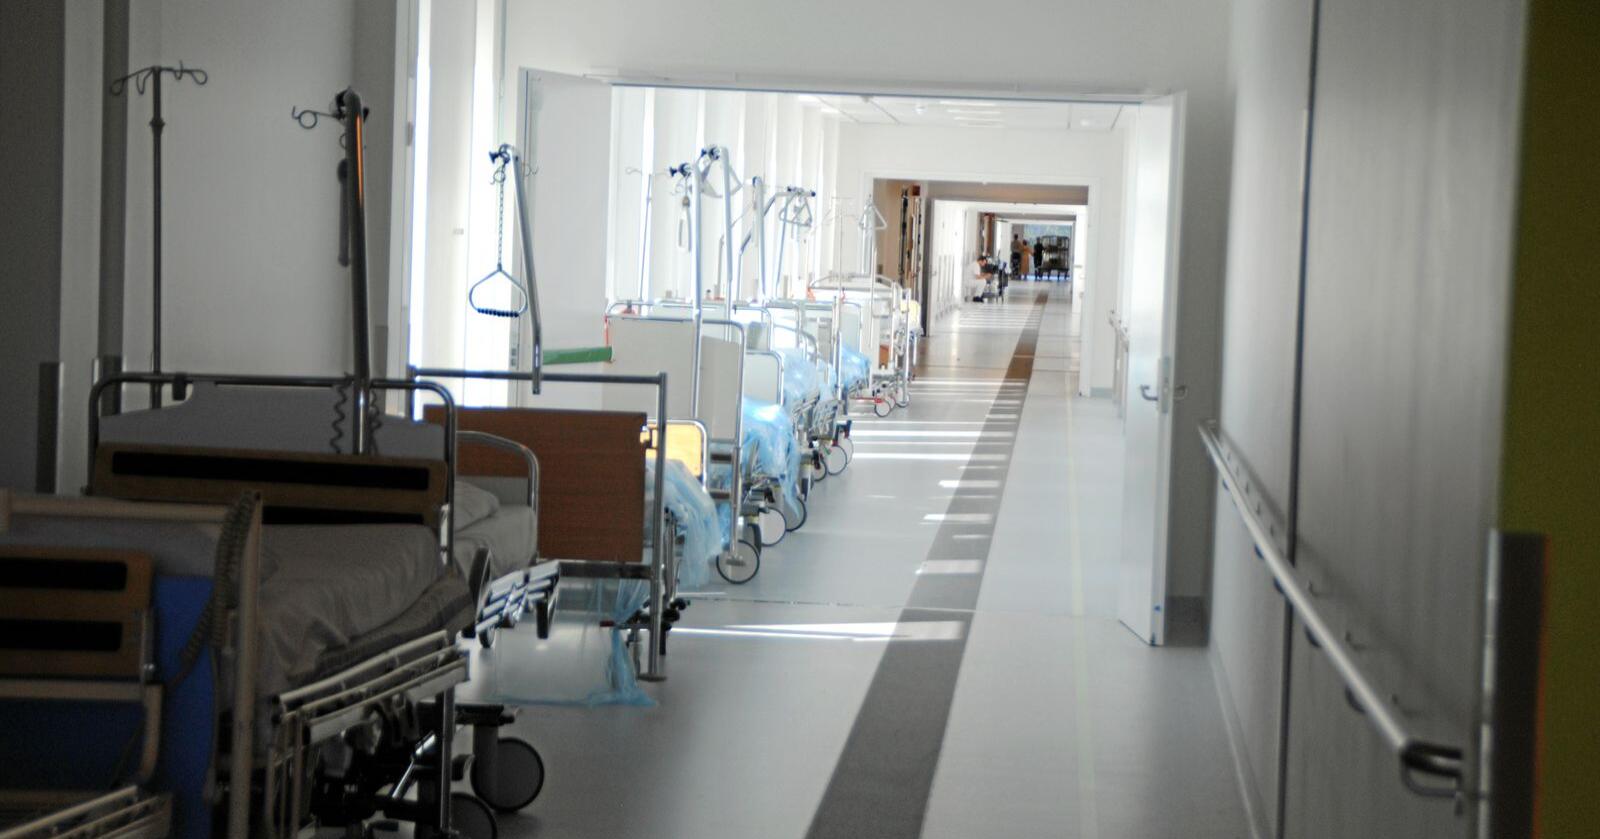 Lagring av sykehussenger i korridorene er et vanlig syn, ifølge tillitsvalgte ved Sykehuset Østfold. Foto: Lars Bilit Hagen